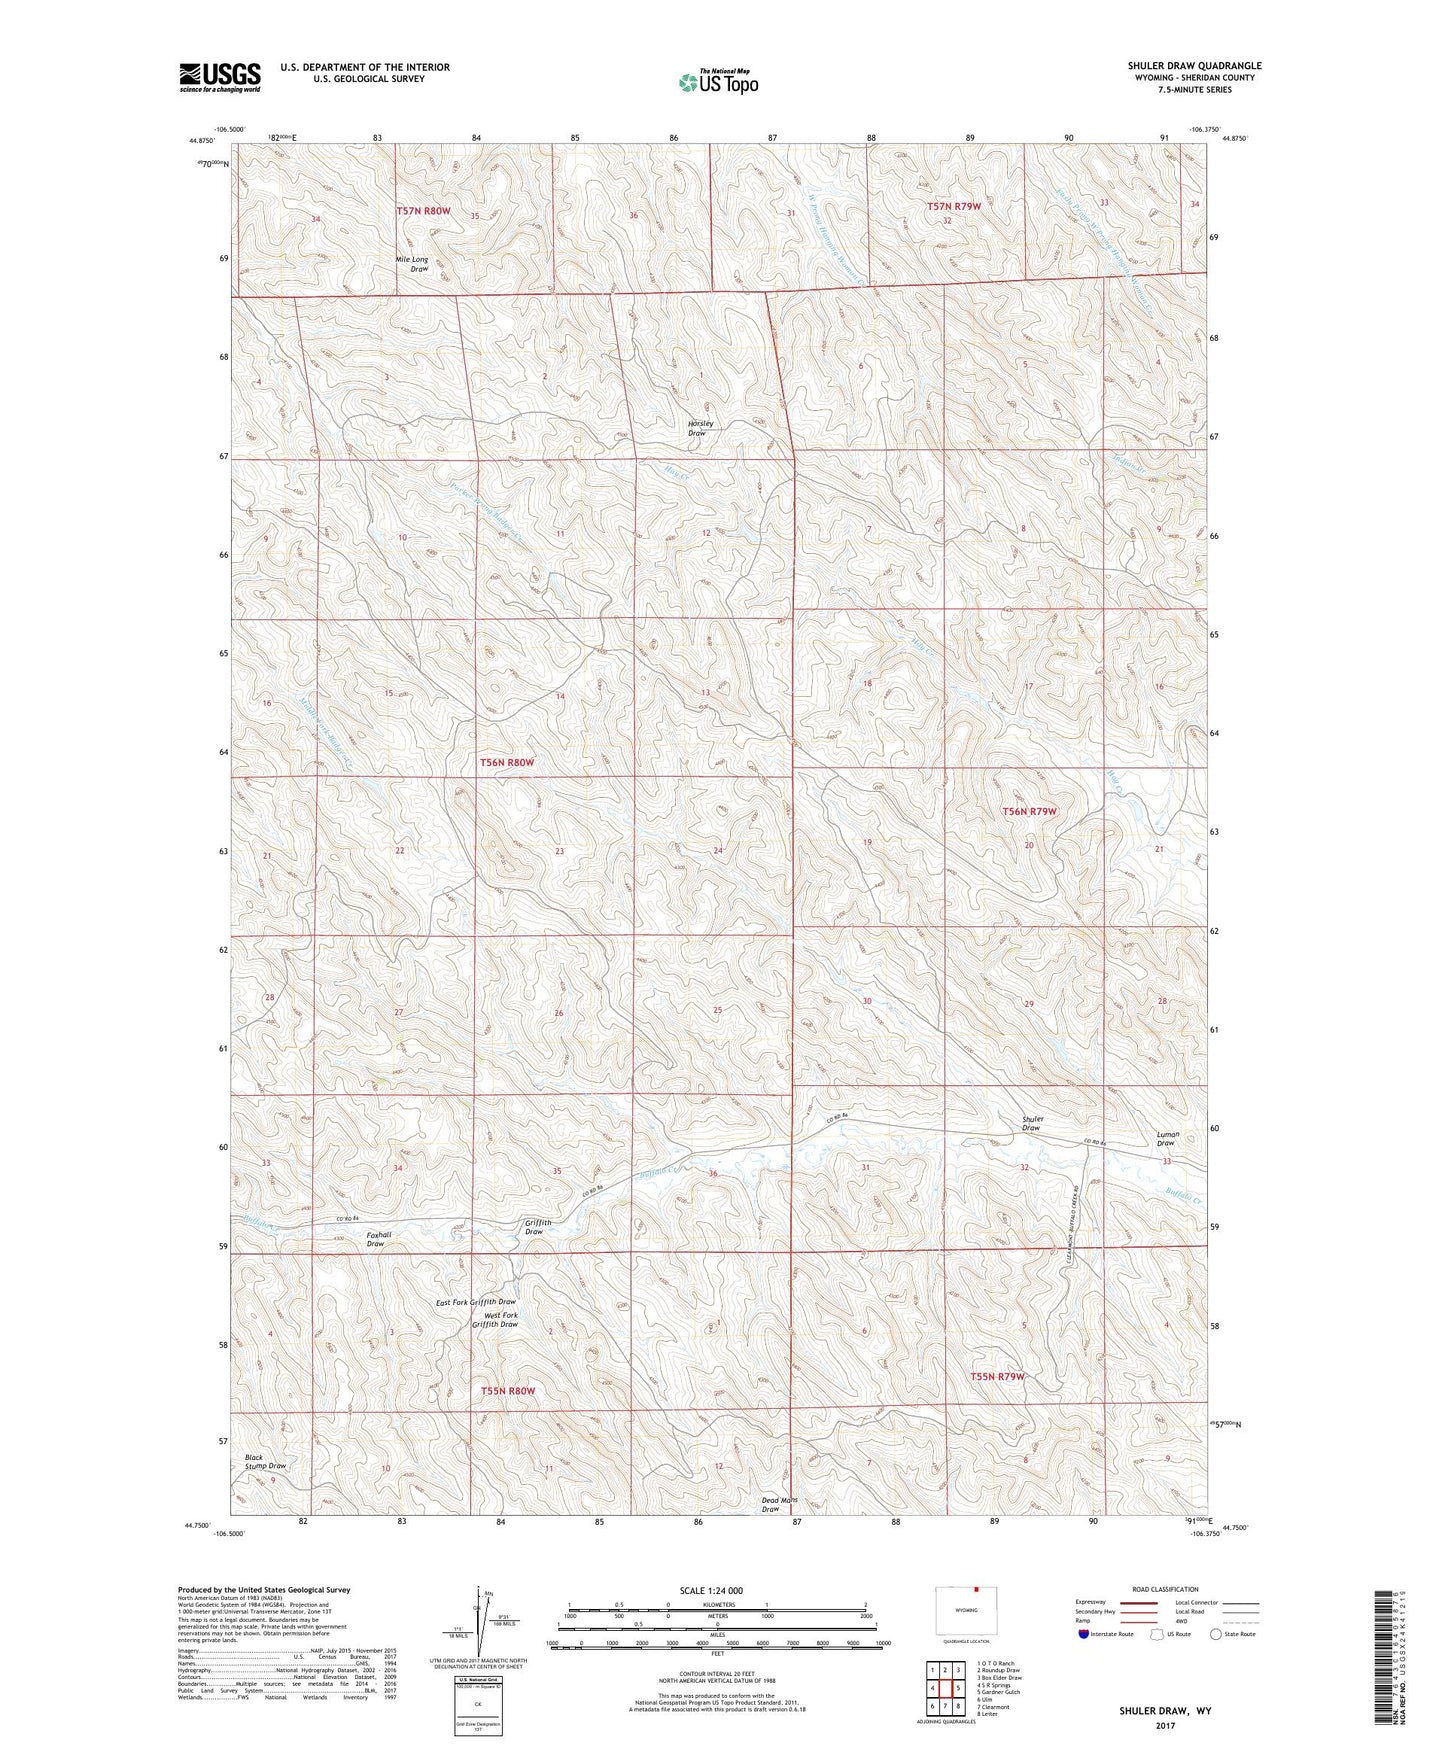 Shuler Draw Wyoming US Topo Map Image